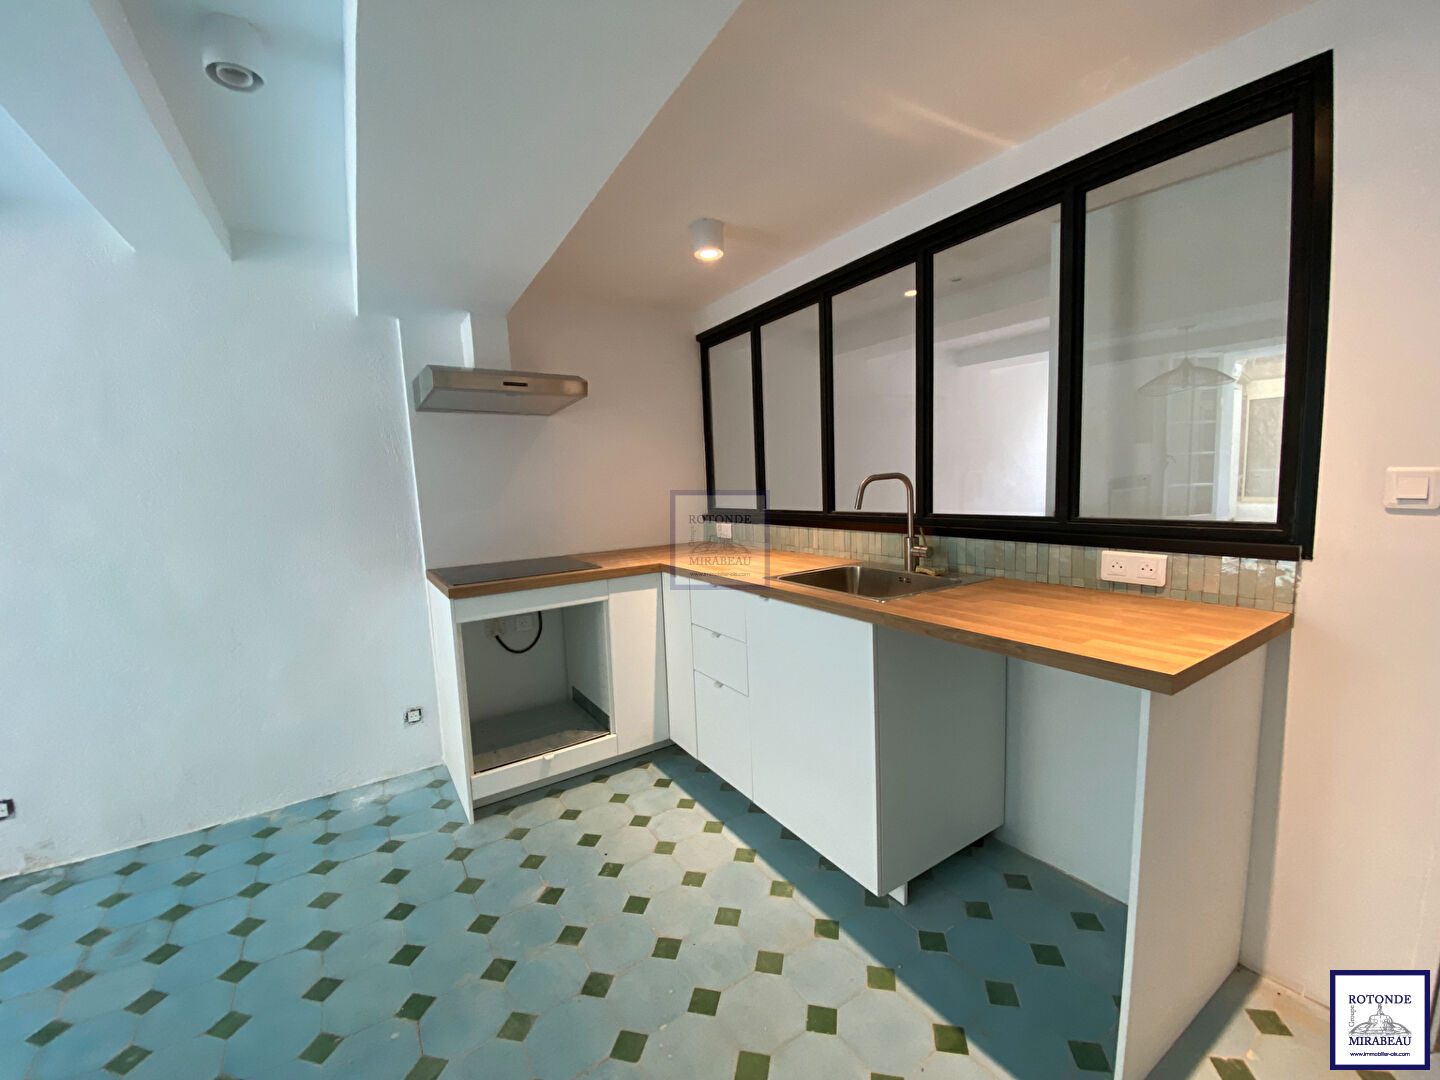 Vente Appartement AIX EN PROVENCE surface habitable de 50.8 m²